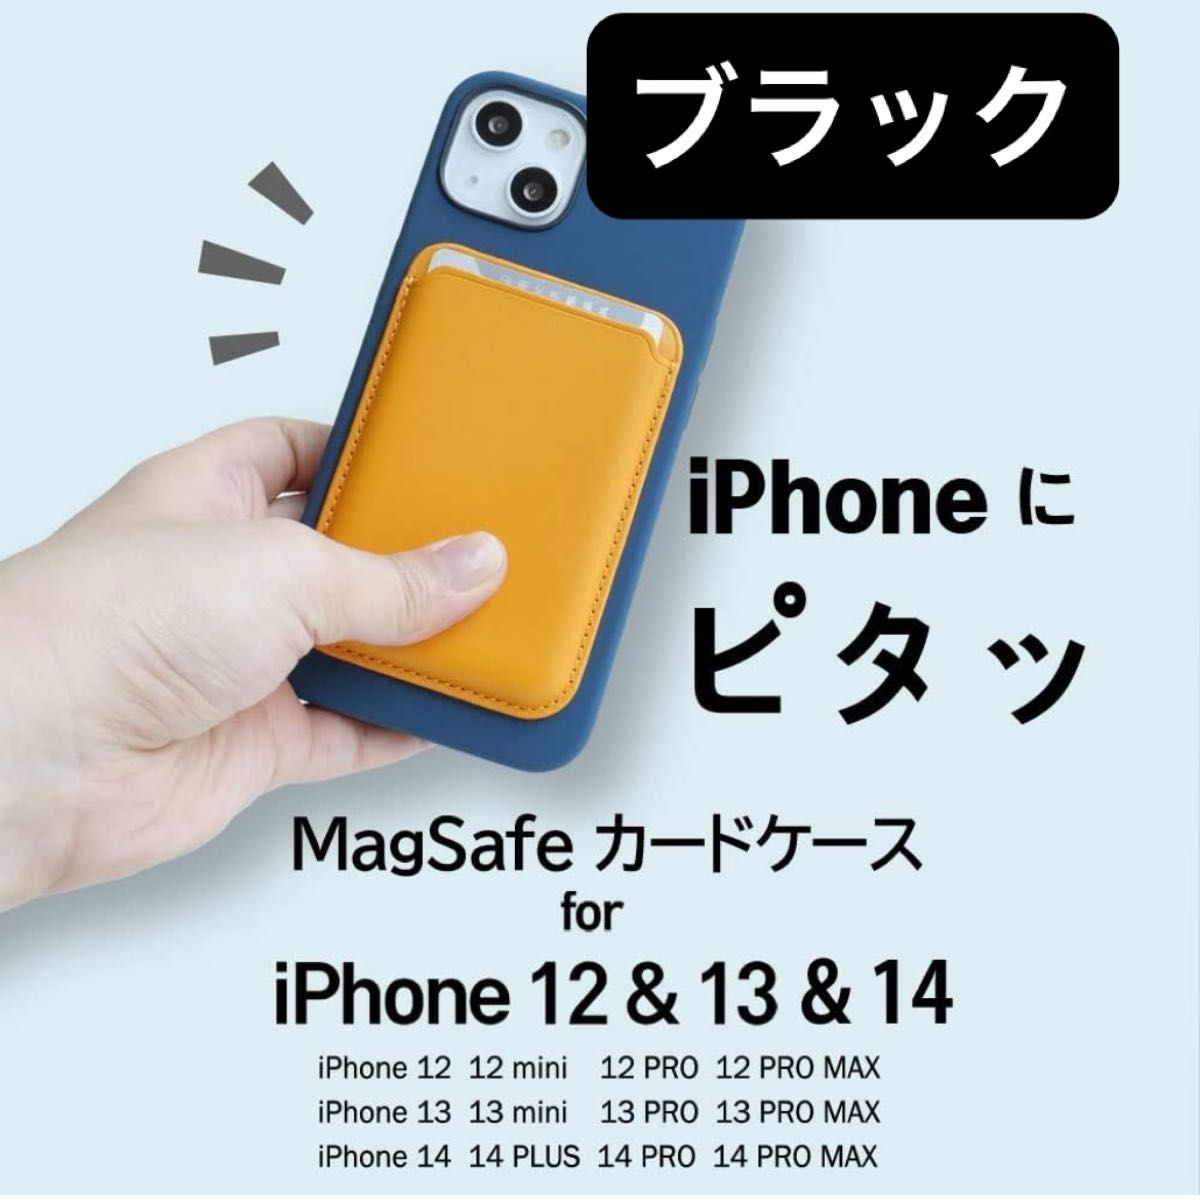 カードケース マグネット内蔵 iPhone用 強力磁力 マグセーフ カード収納 iPhone